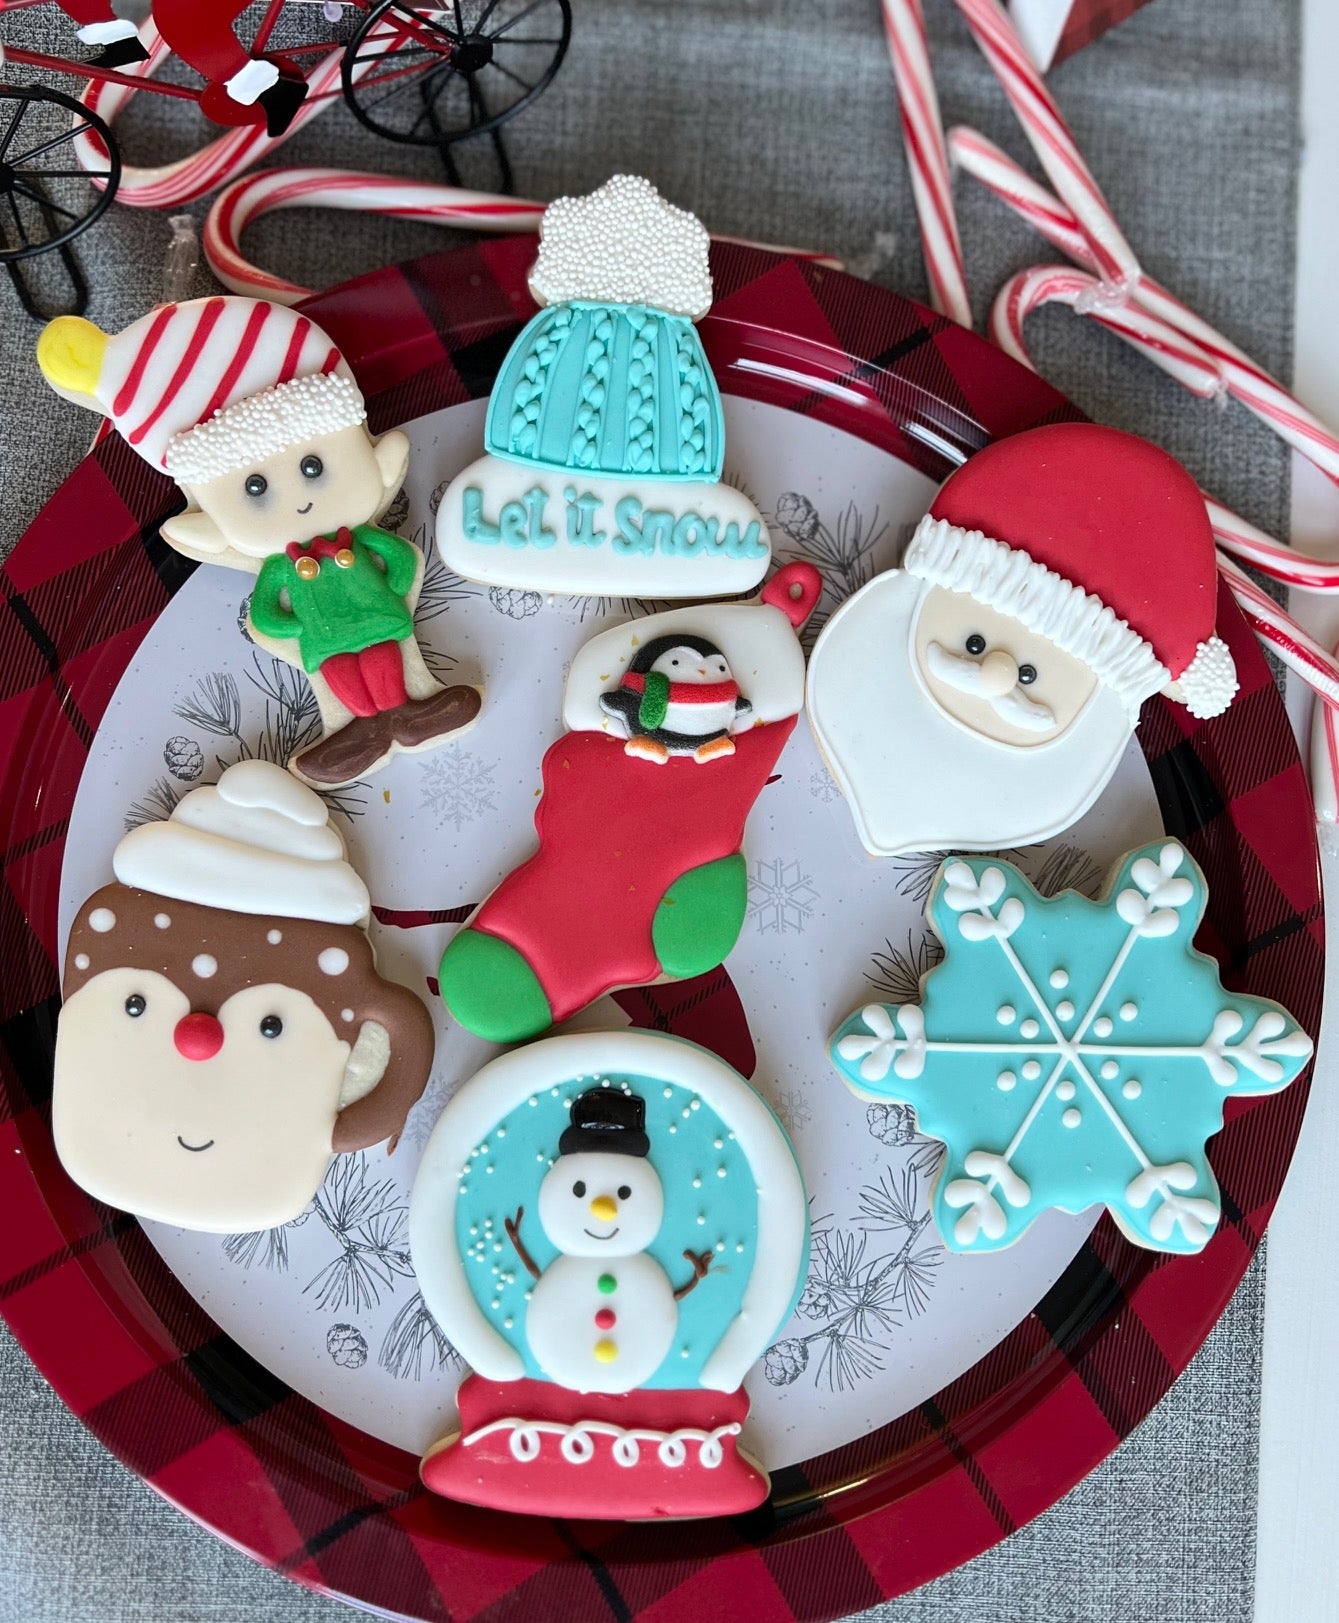 Tracy Cornacchia's group private sugar cookie decorating class Dec 12th 2022 6:30-8:30 pm